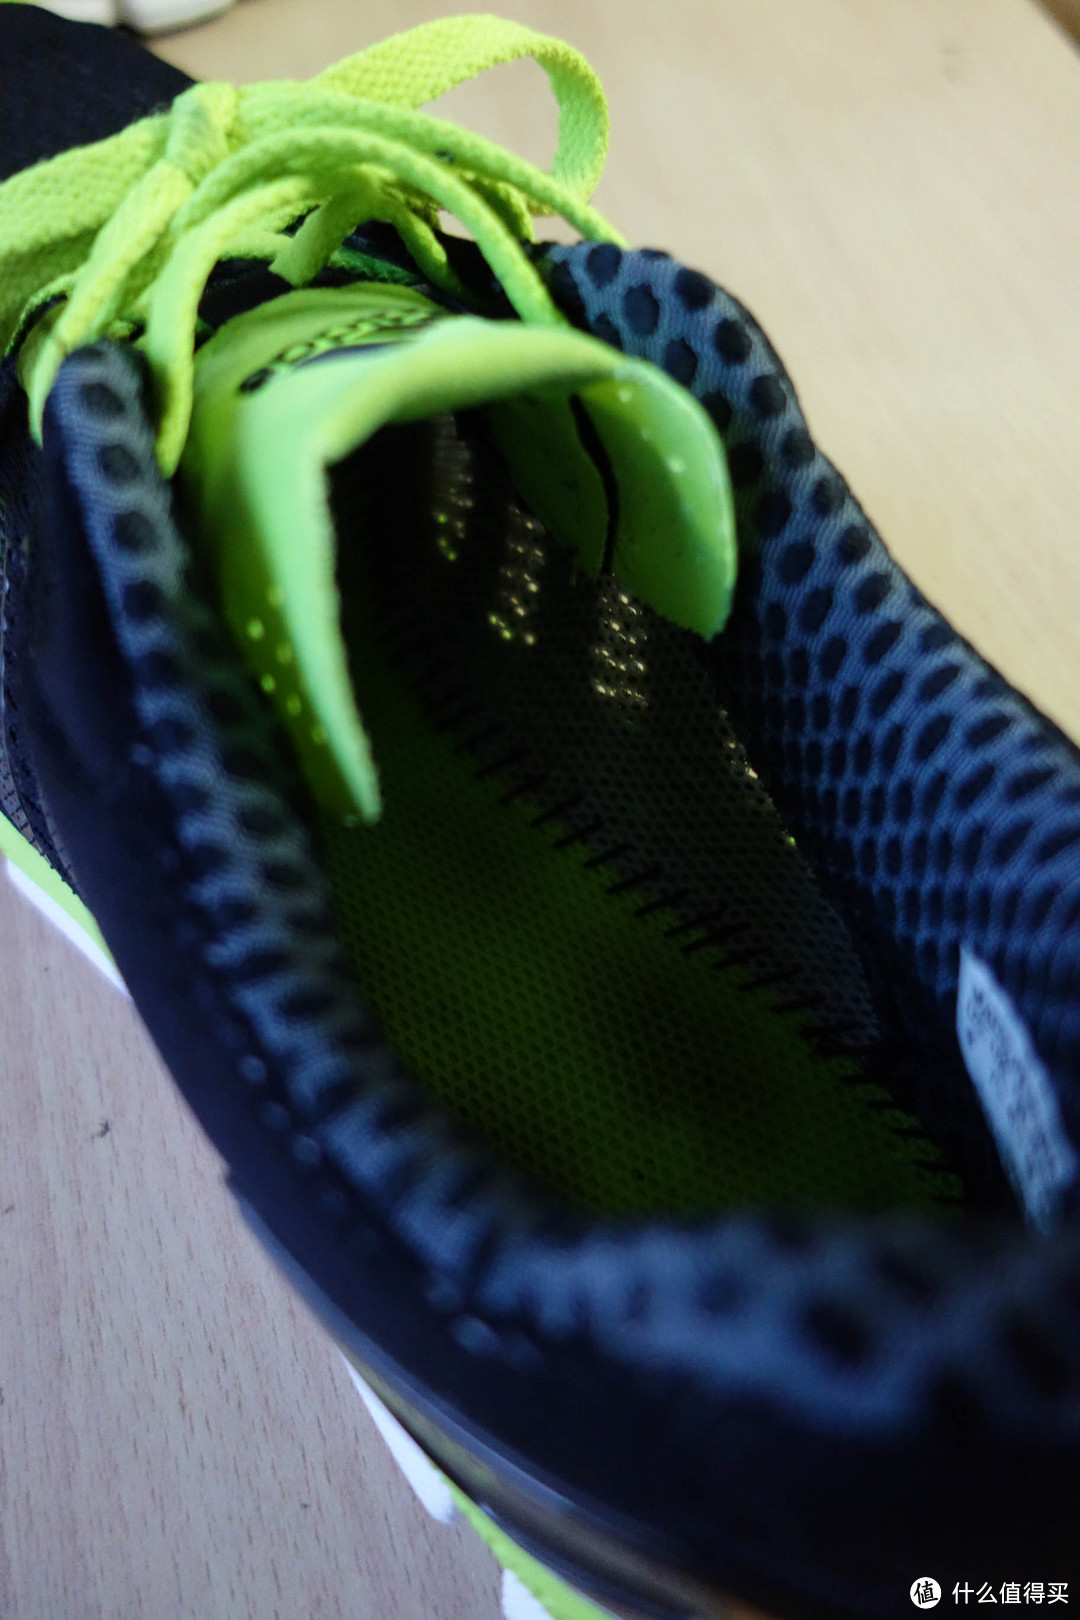 蓝绿也能CP：adidas 阿迪达斯 CC Ride 跑步鞋 & Nike 耐克 Flyknit Trainer 训练鞋